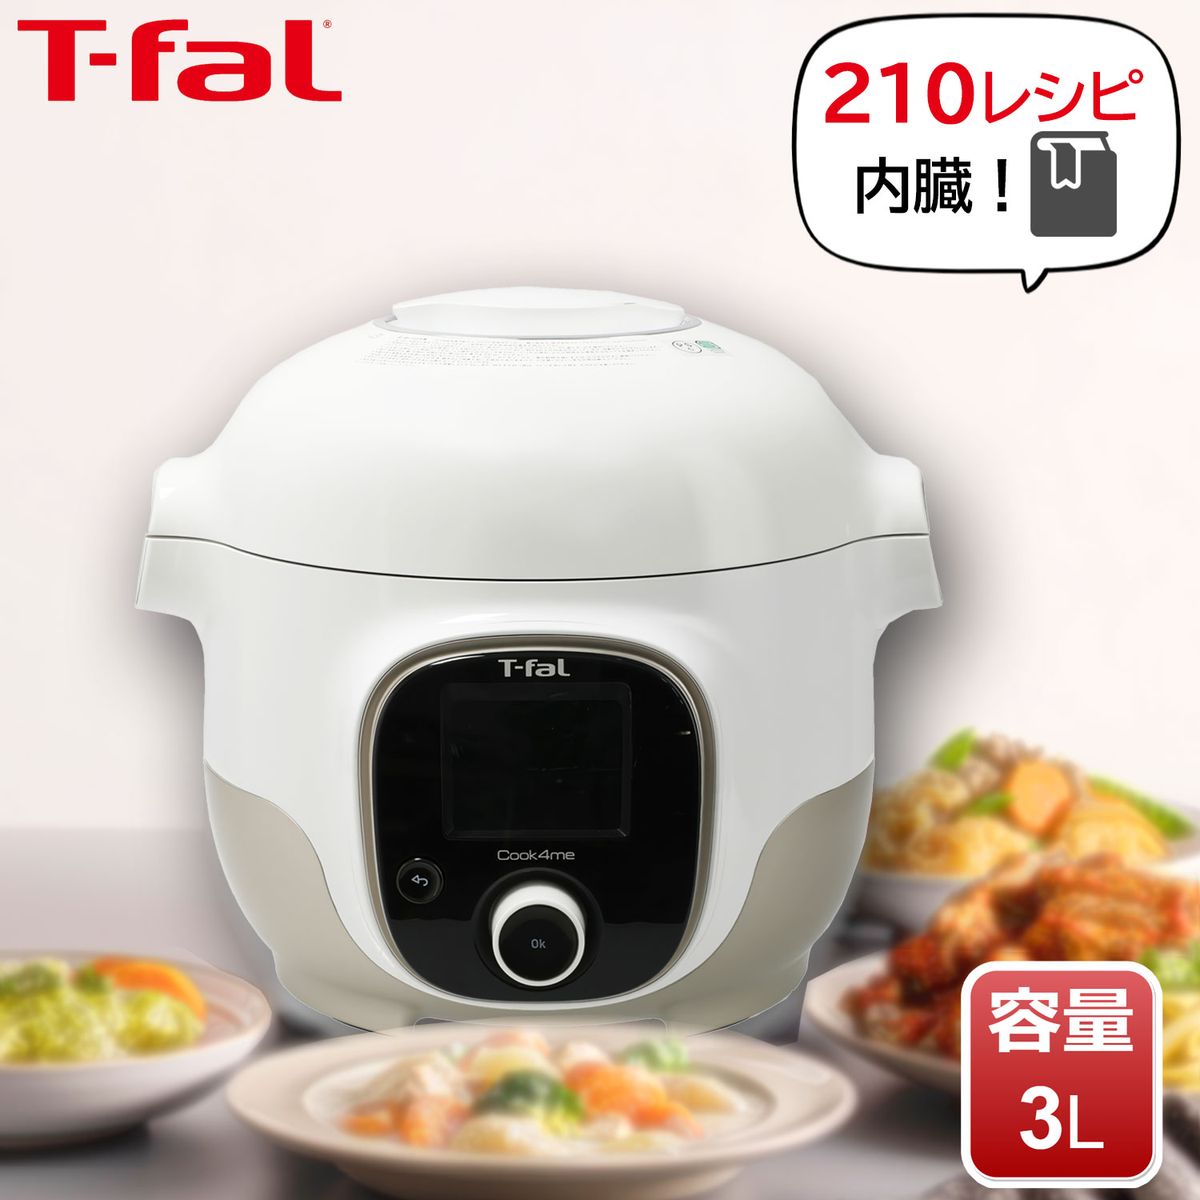 日本在庫・即発送 【送料無料】T-fal ティファール 3L クックフォーミー 調理機器